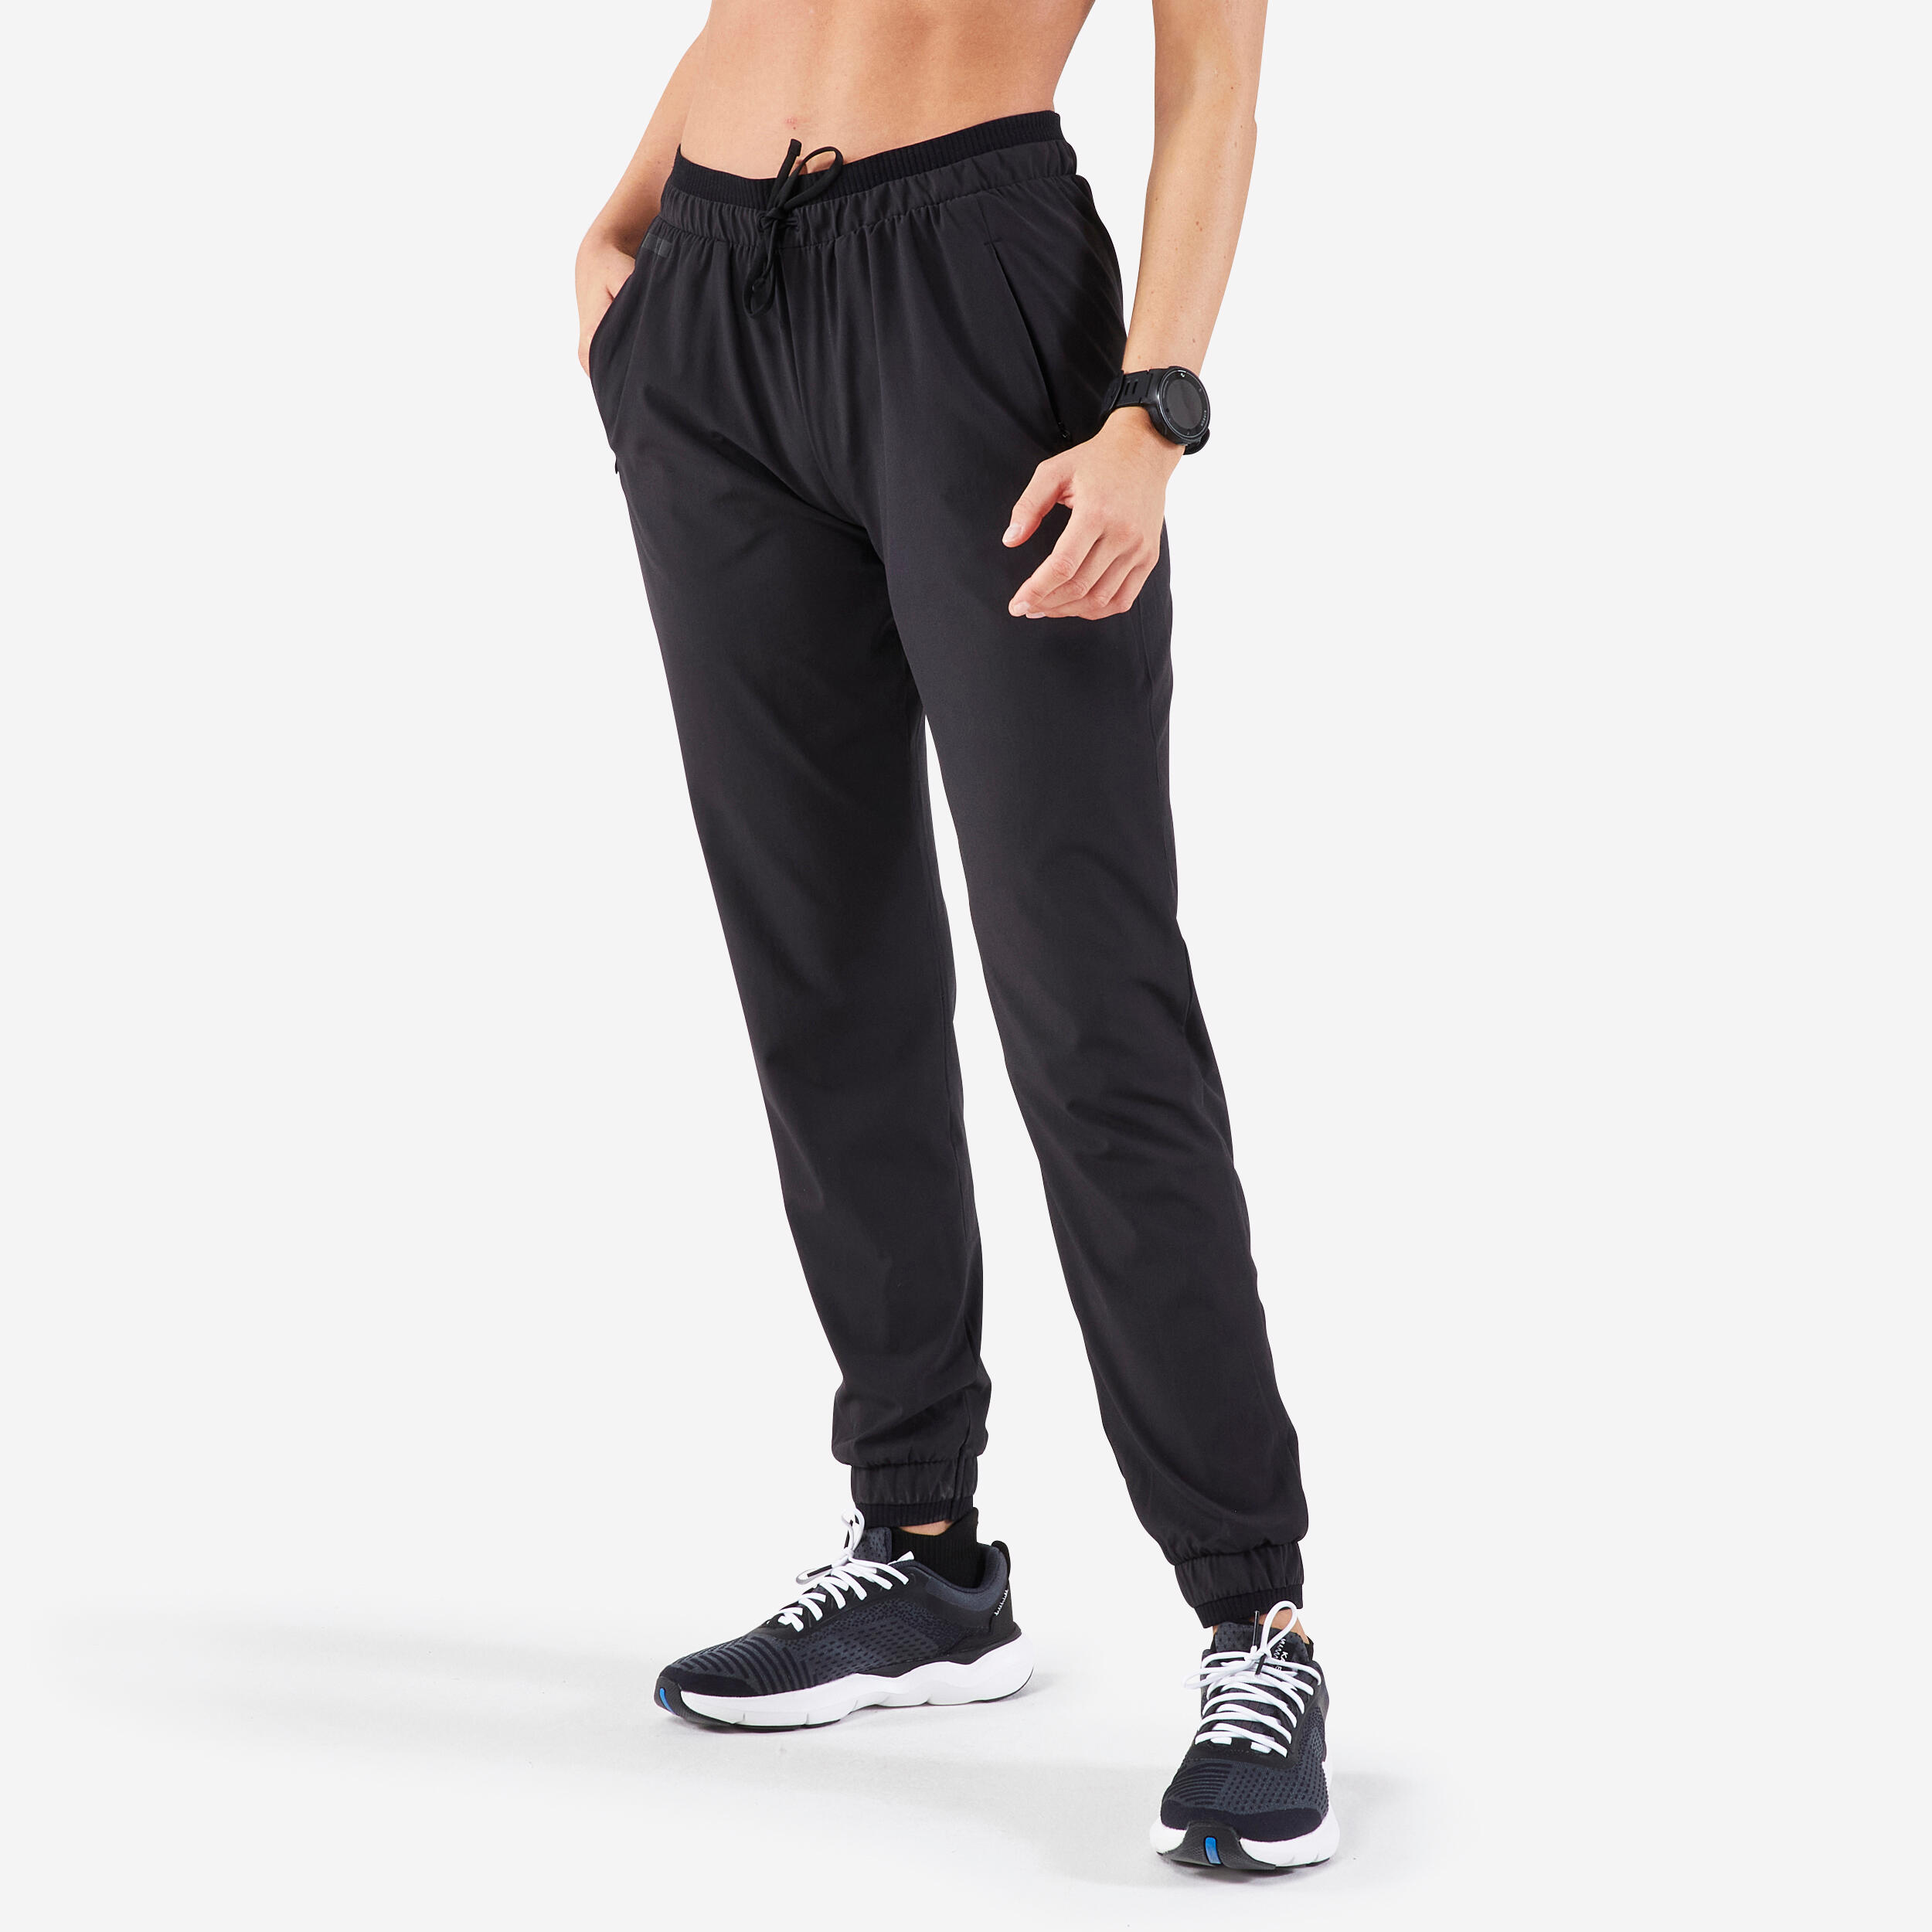 Pantalons de jogging & coton ouaté pour femmes